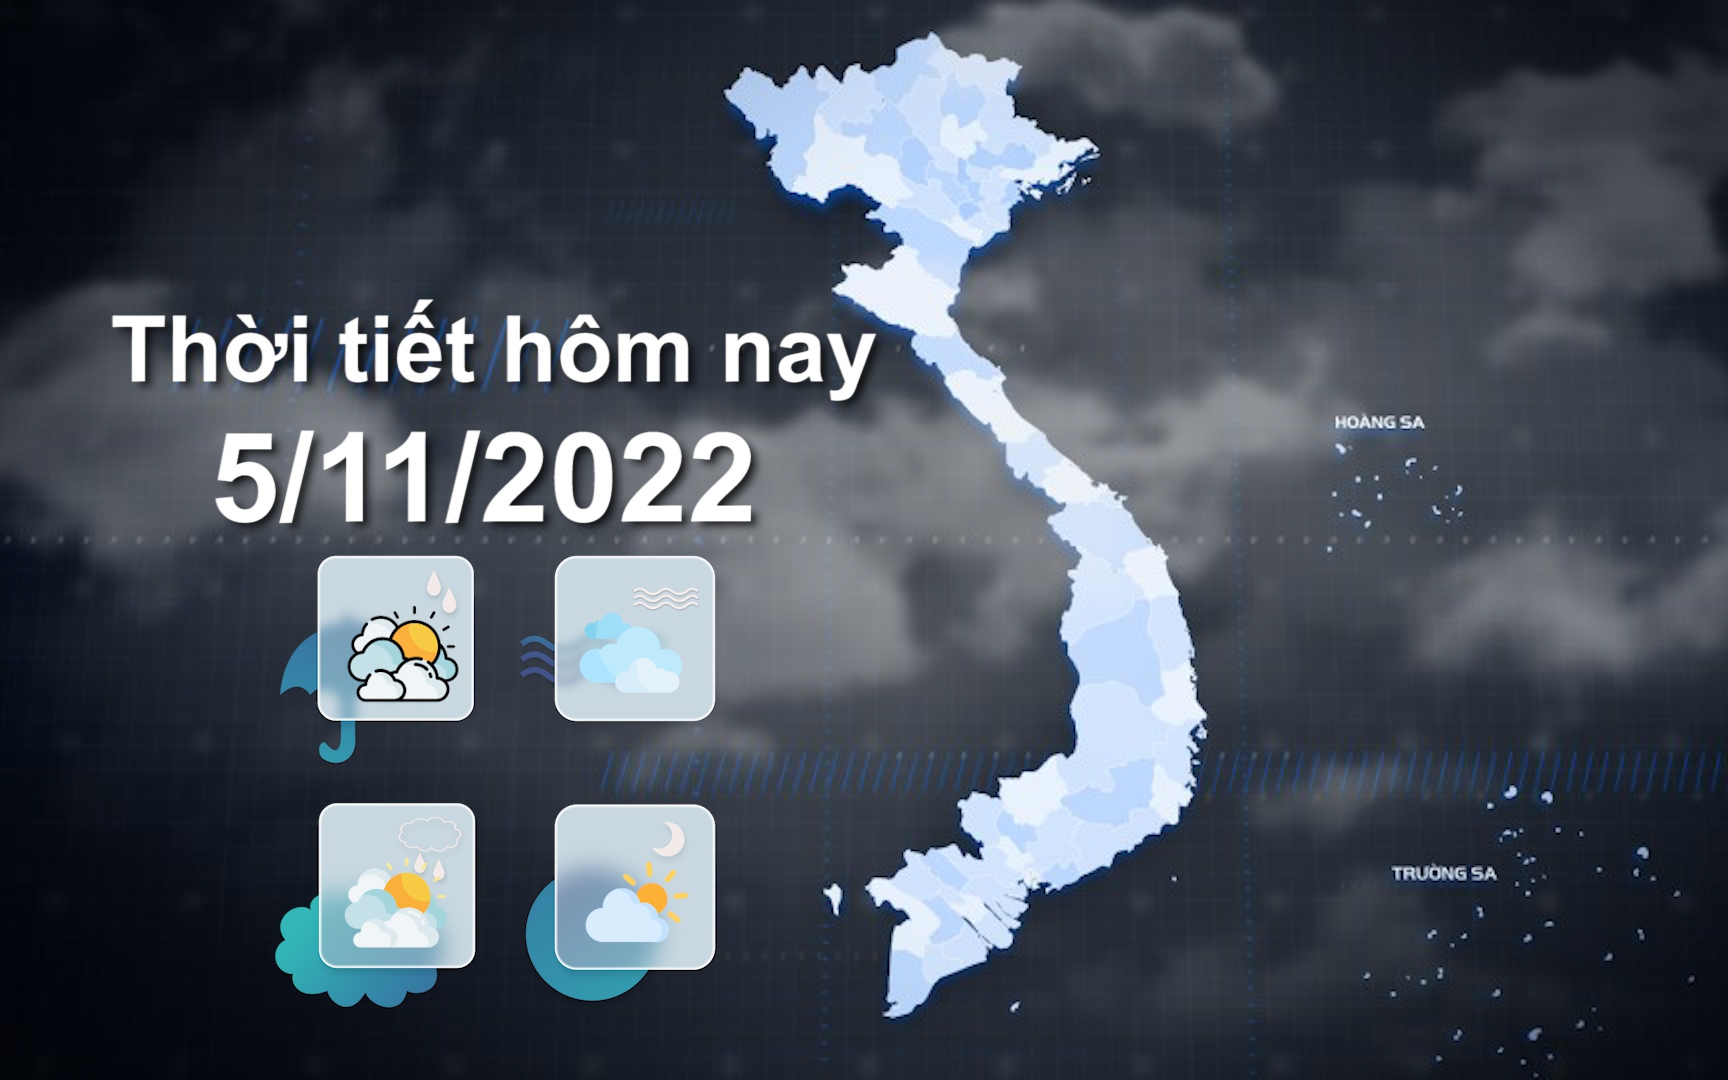 Thời tiết hôm nay 5/11/2022: Bộ Bắc trời rét, có nơi dưới 11 độ C